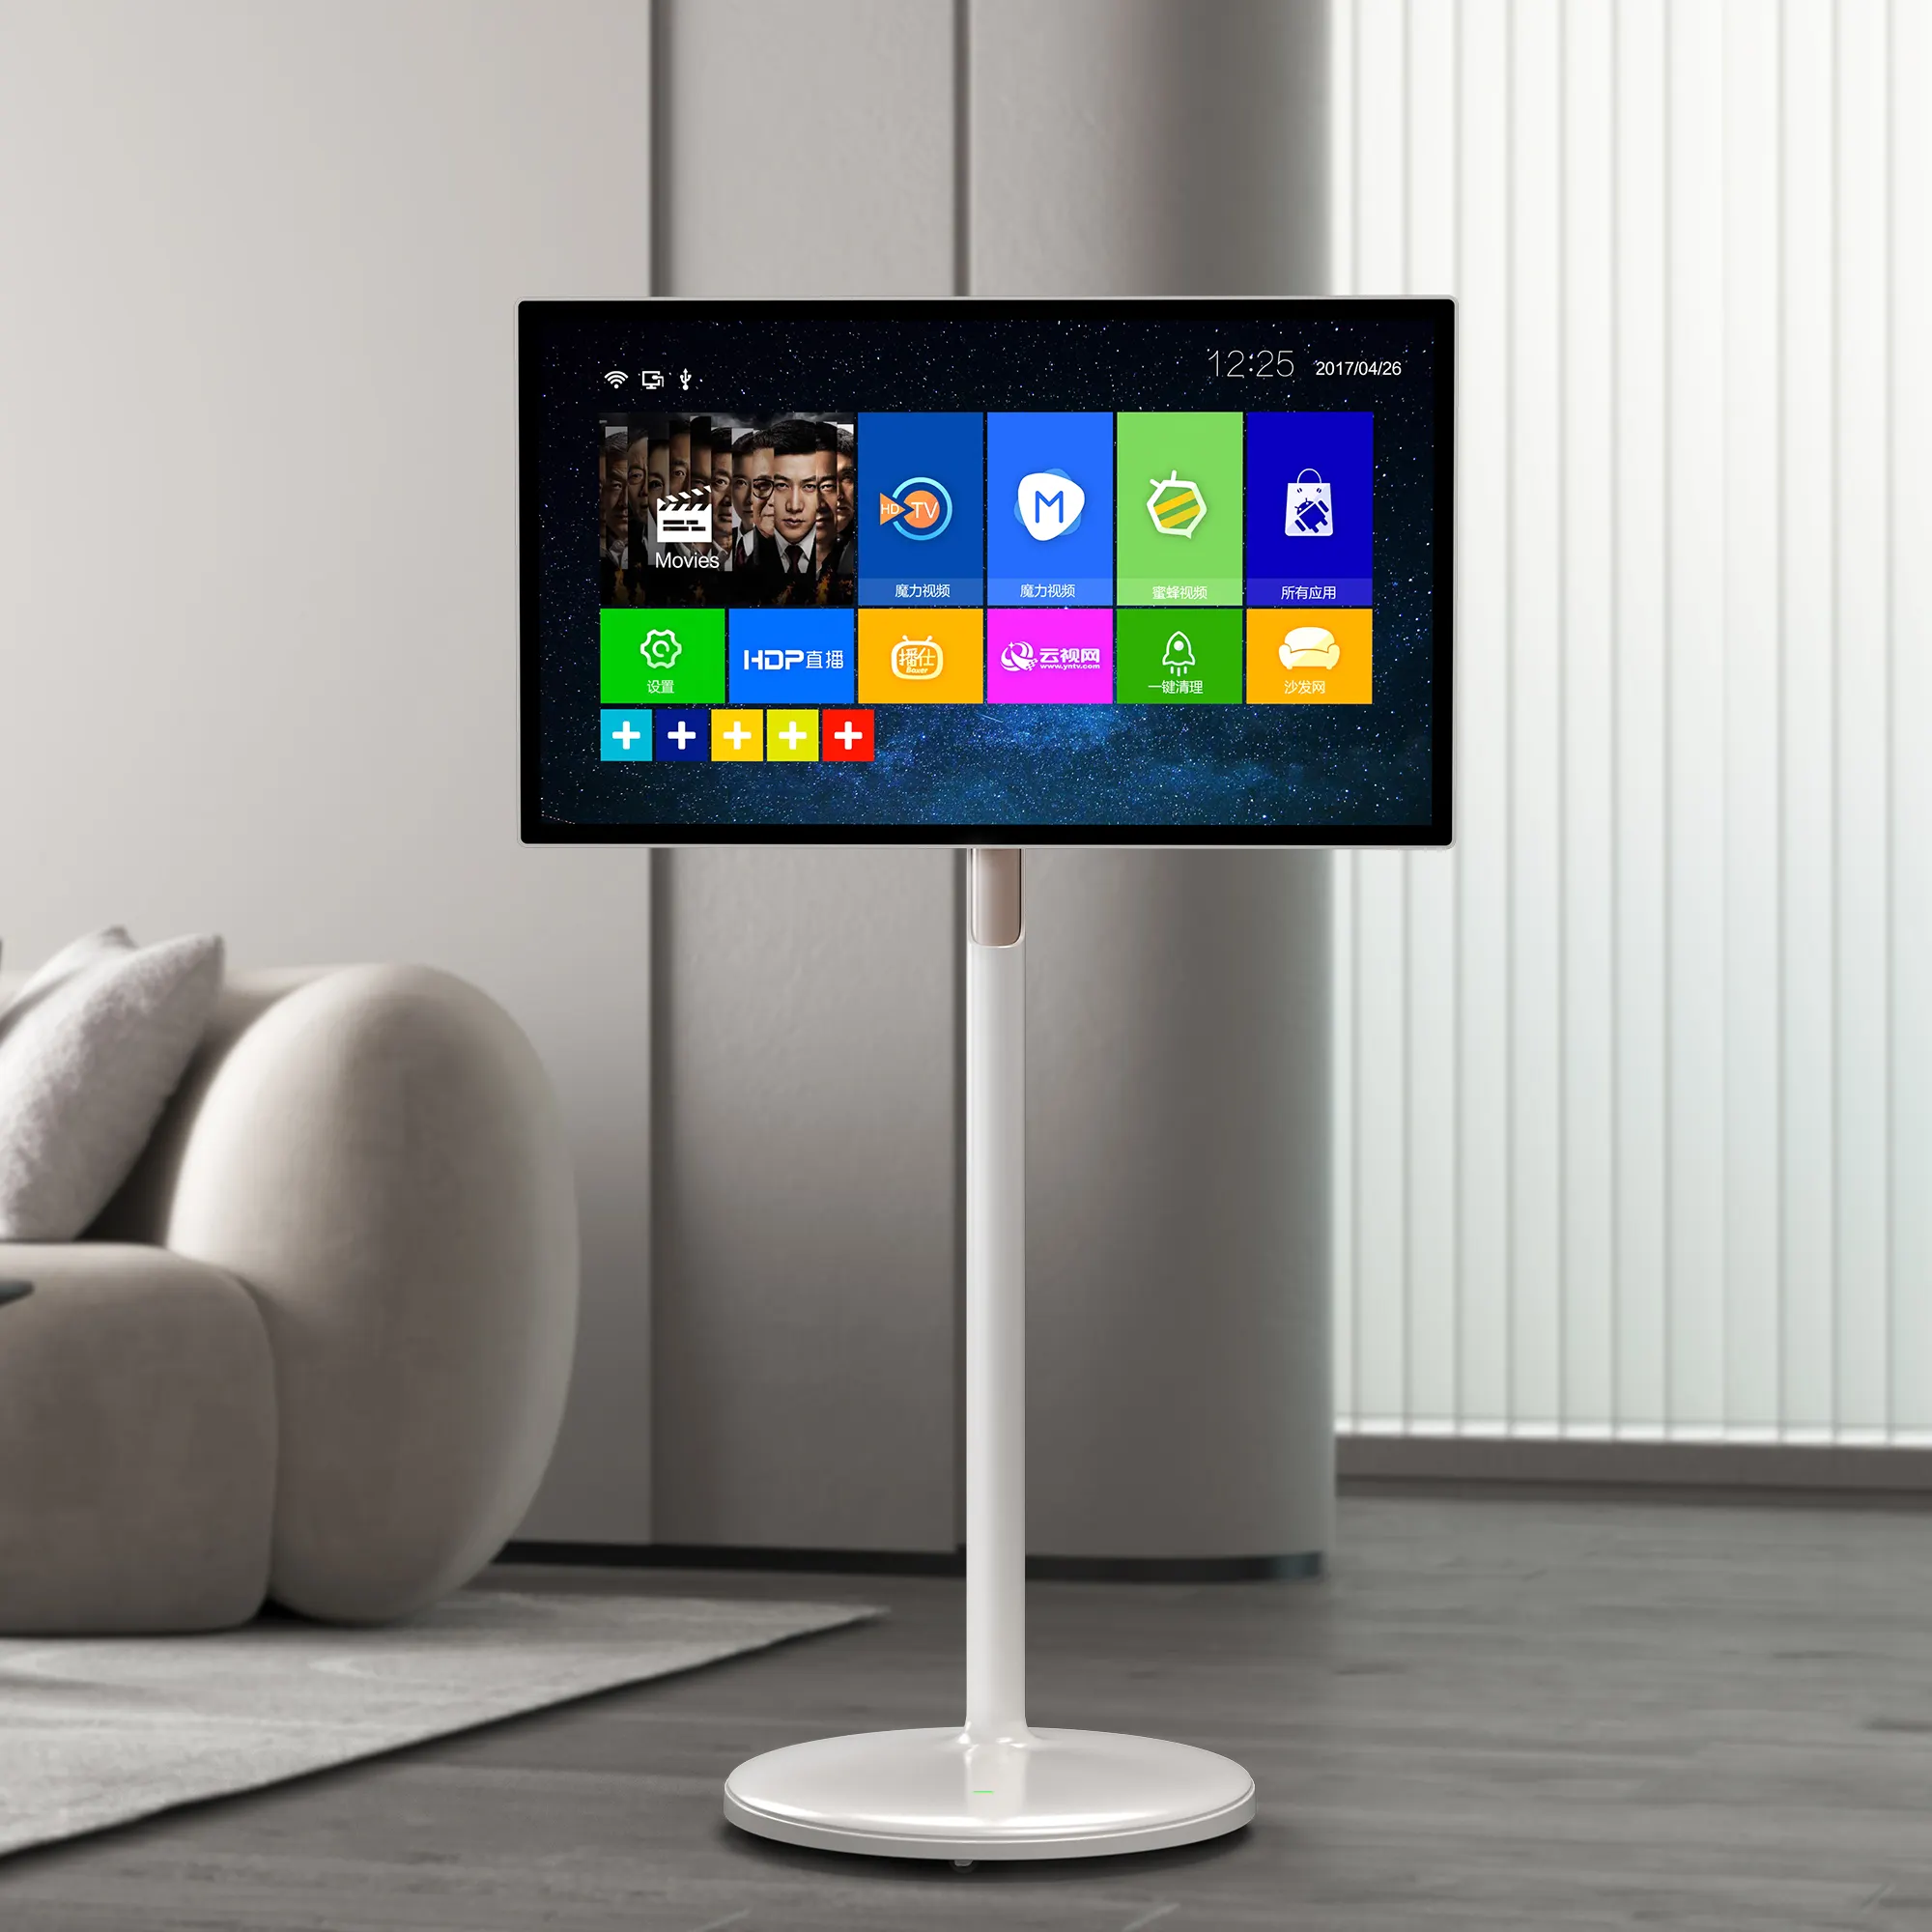 Sıcak satış akıllı TV 32 inç Android 10 OS sistemi Incell dokunmatik ekran Stanbyme standı ve pil ile